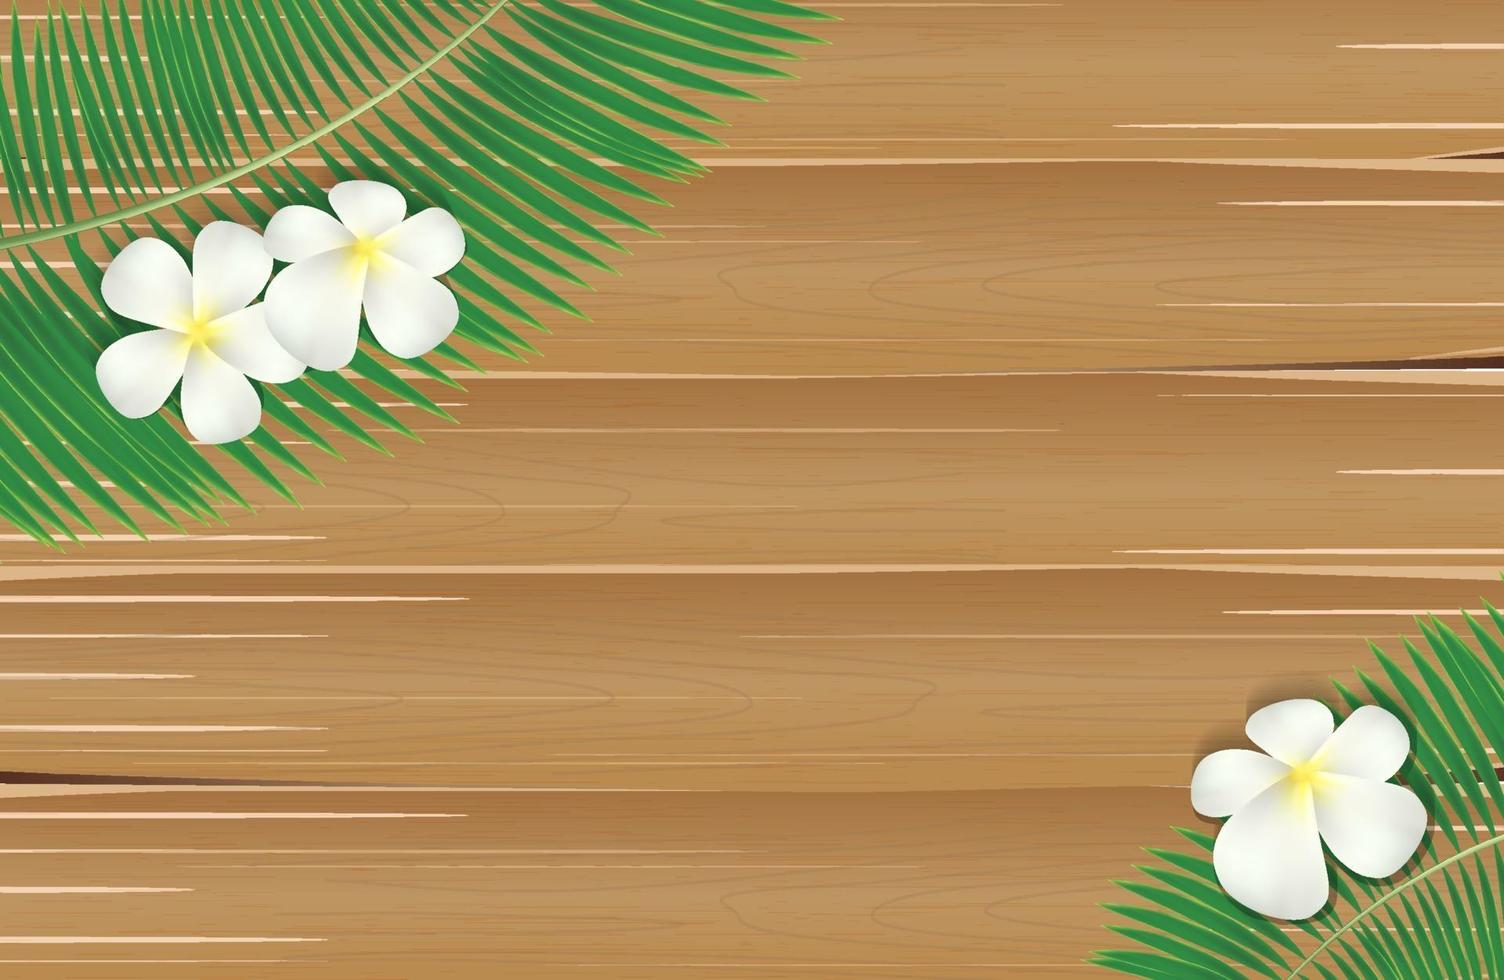 Kokosnussbaumblatt mit Plumeria-Blume auf Holzbrett vektor